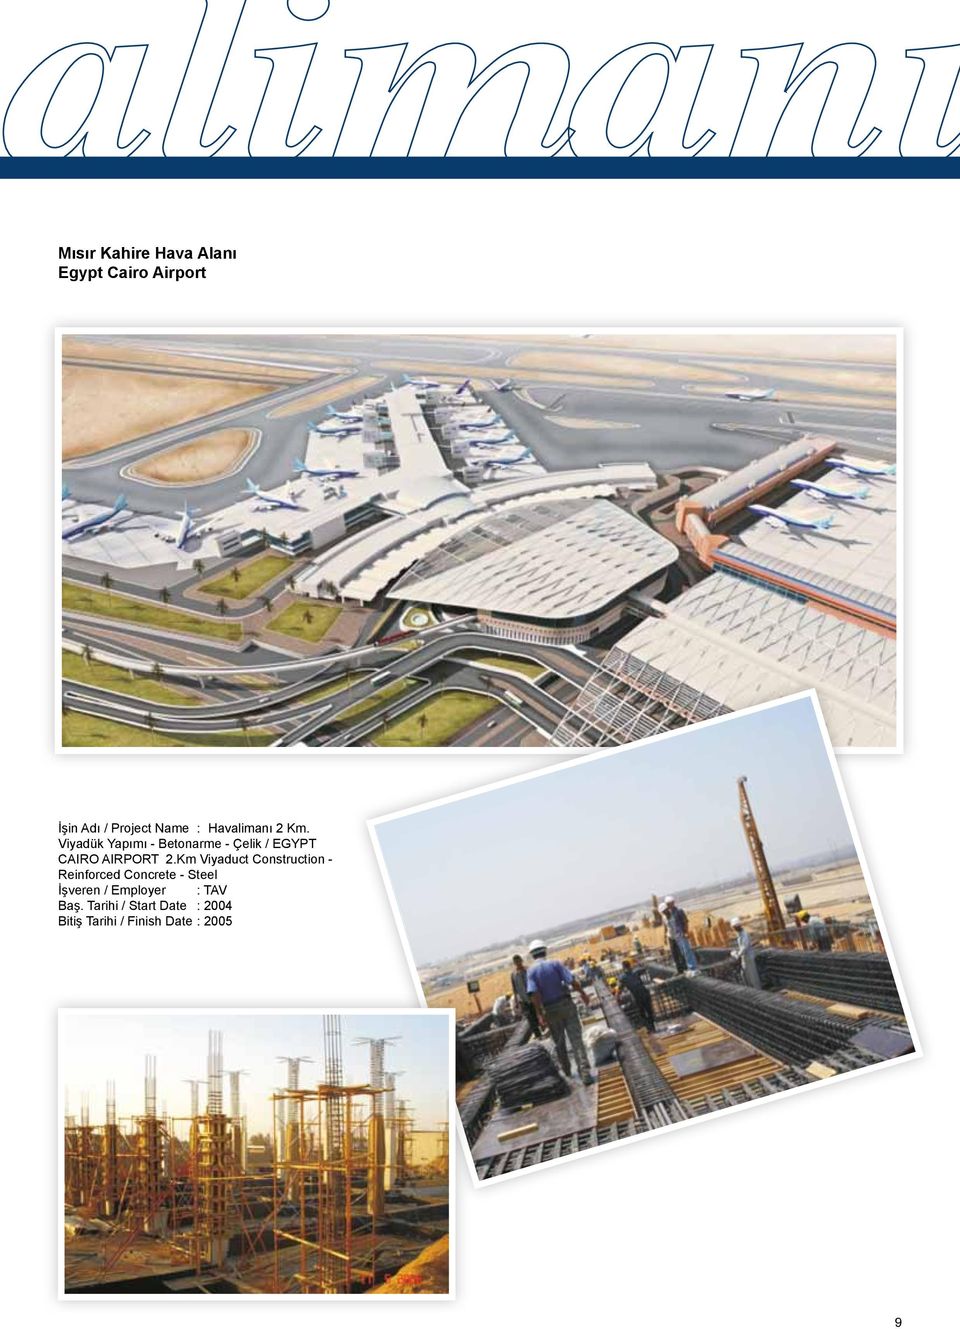 Viyadük Yapımı - Betonarme - Çelik / EGYPT CAIRO AIRPORT 2.